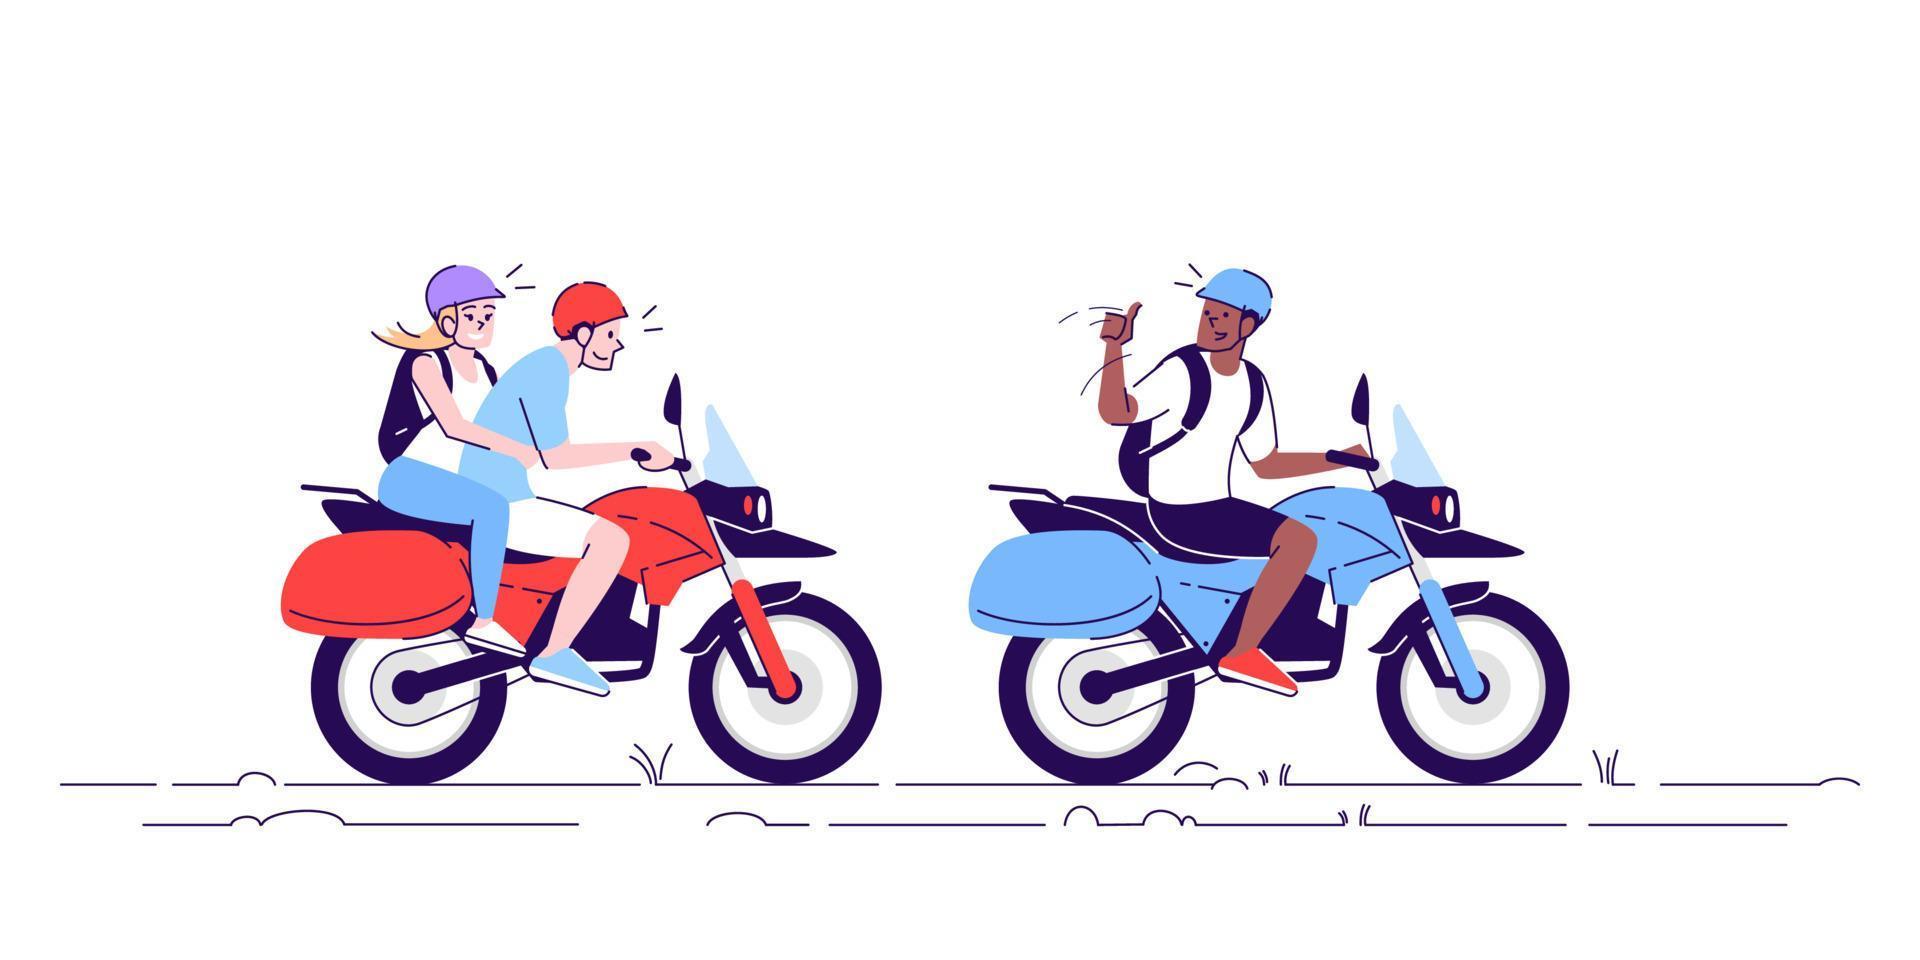 Menschen auf Motorrädern flache Gekritzelillustration. Touristen, die Fahrrad fahren. Paar mit lokalen Verkehrsmitteln mit Führer. Indonesien Tourismus 2D-Cartoon-Figur mit Umriss für die kommerzielle Nutzung vektor